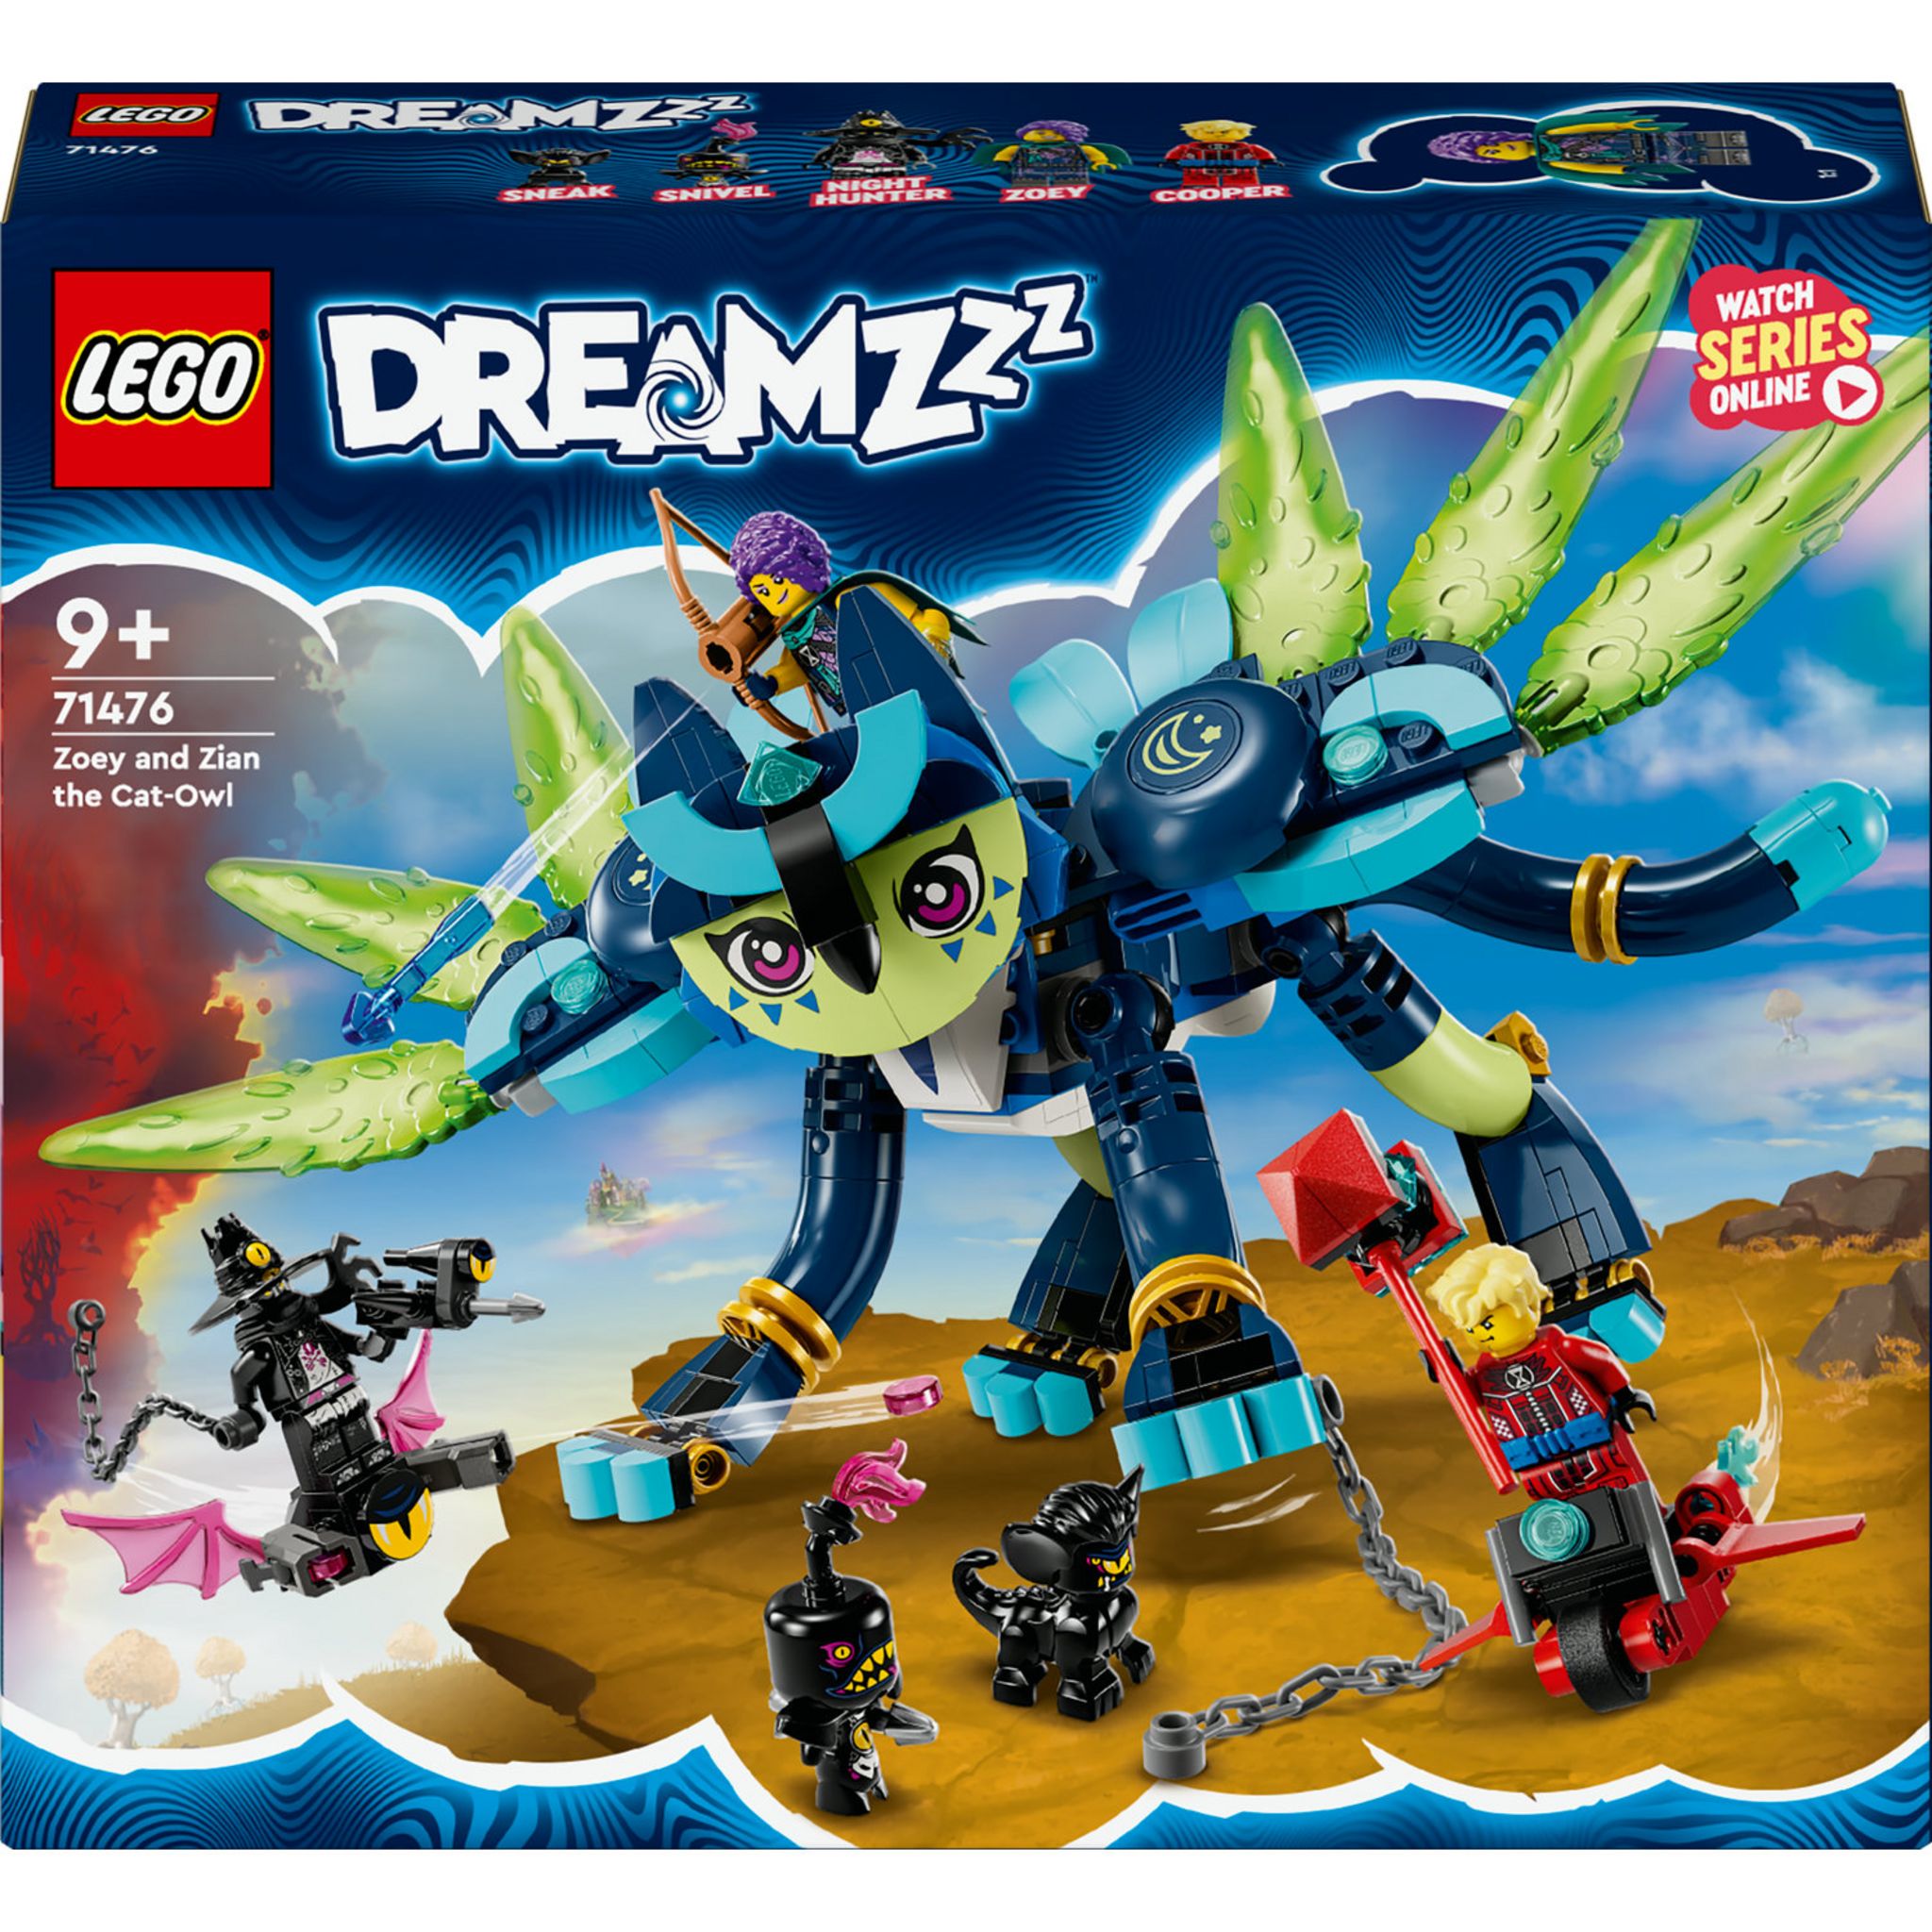 LEGO DreamZzz 71477 La tour du marchand de sable 71477